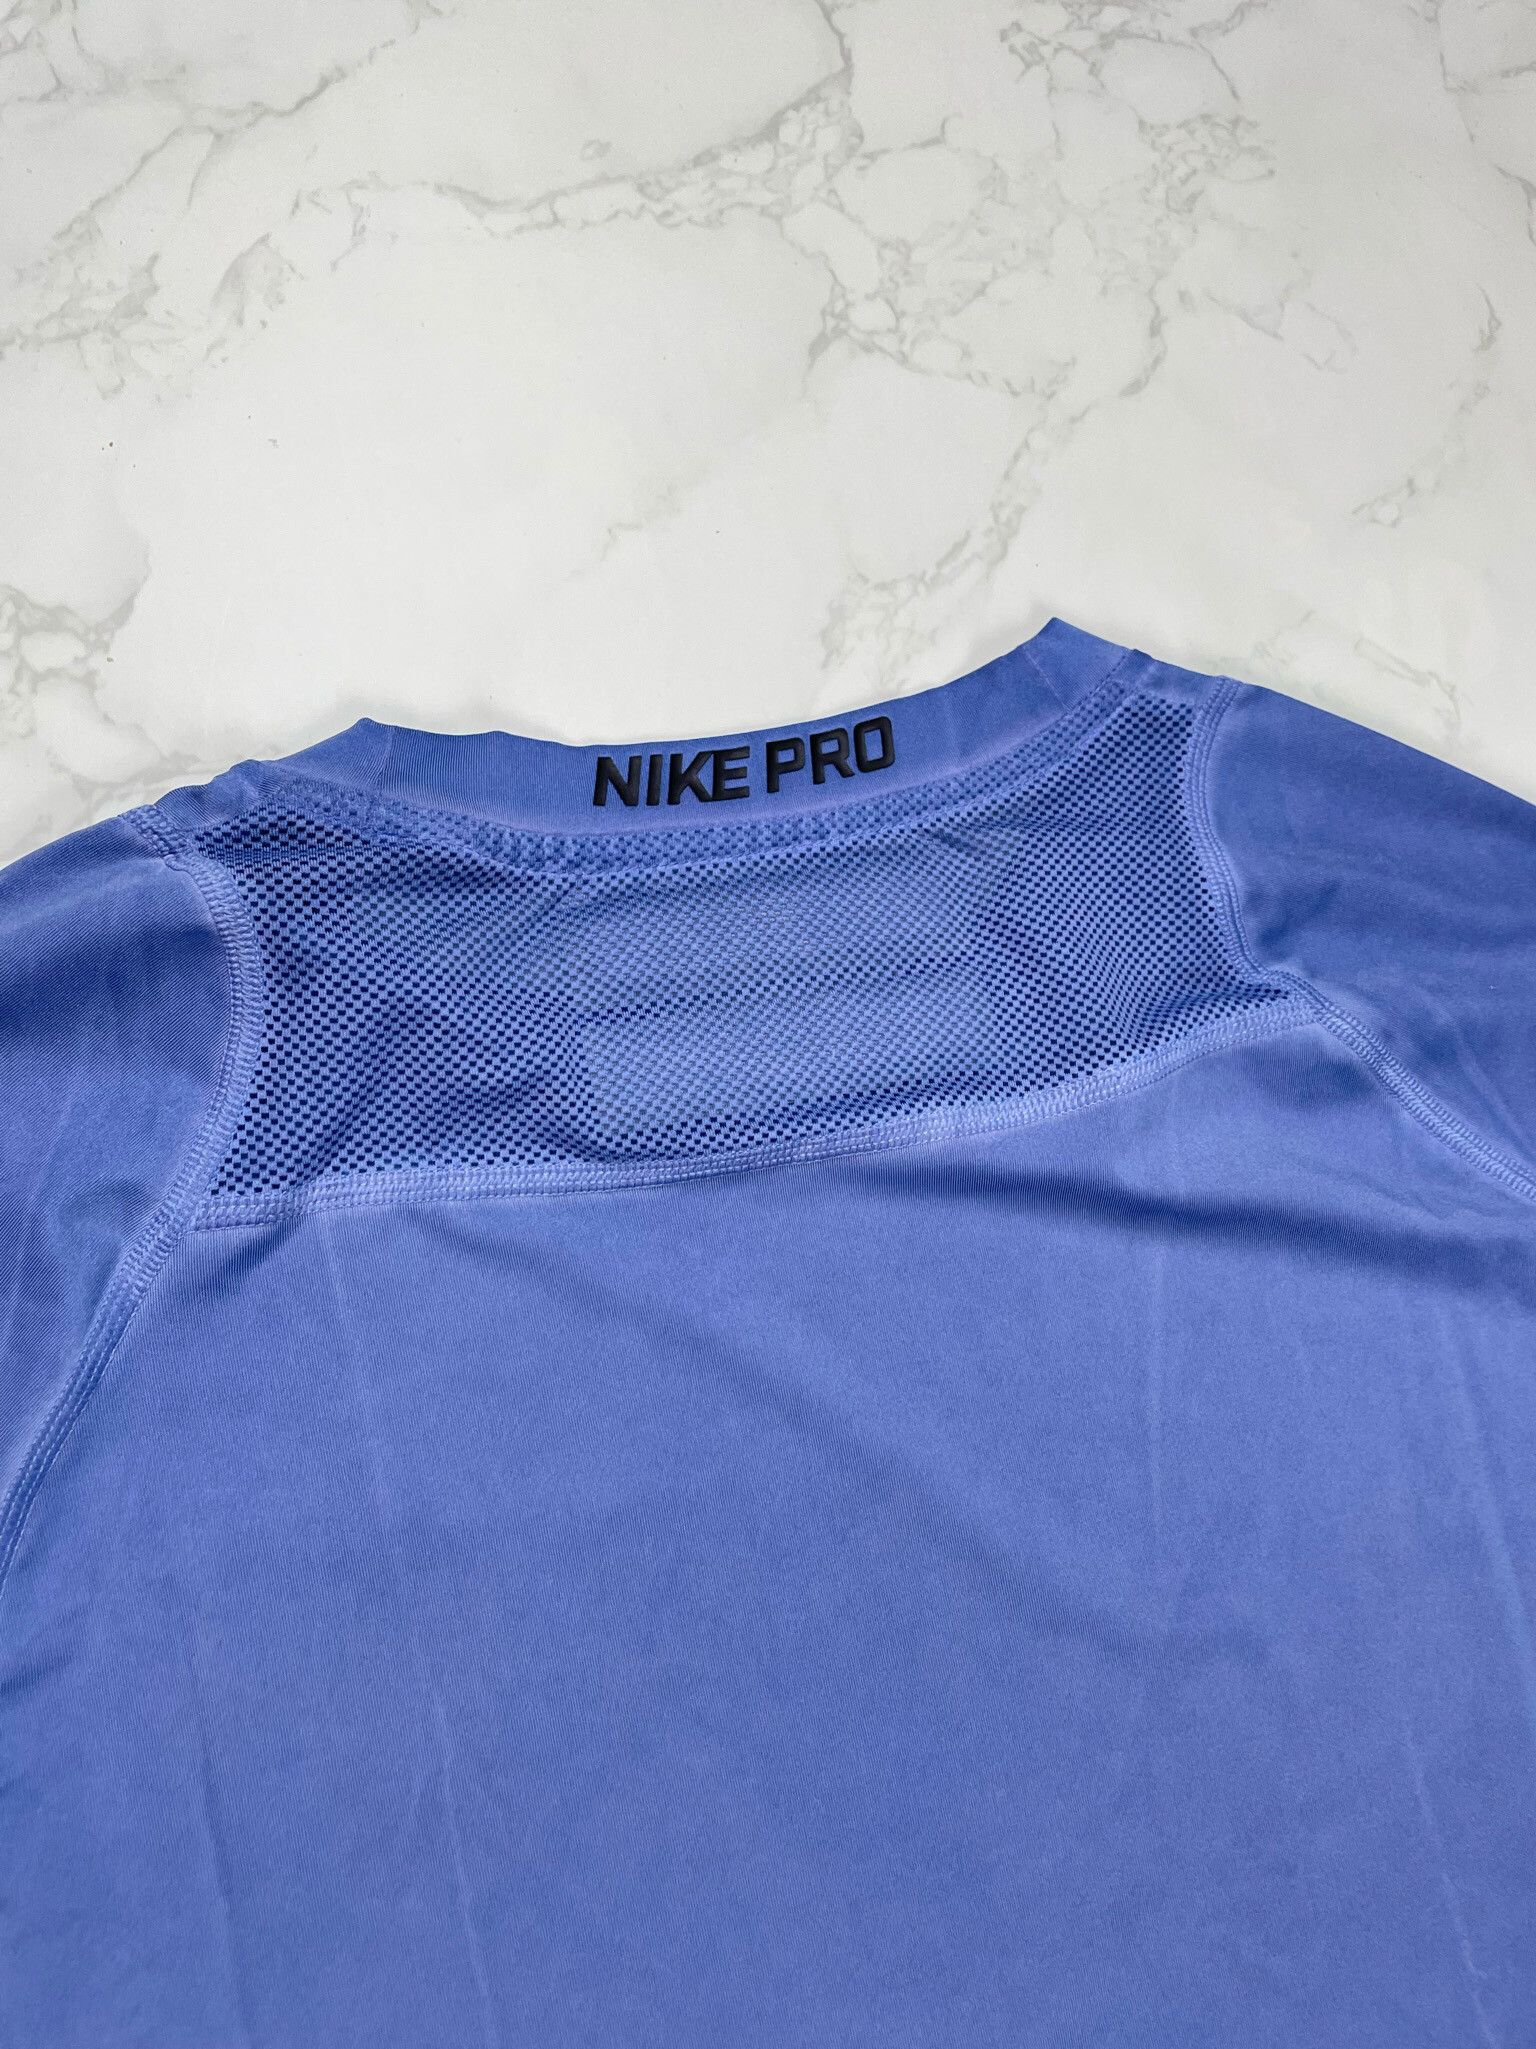 Nike 🔥65% OFF🔥 [SALE] 1017 ALYX 9SM x Nike Pro Dye Blue Tee | Grailed